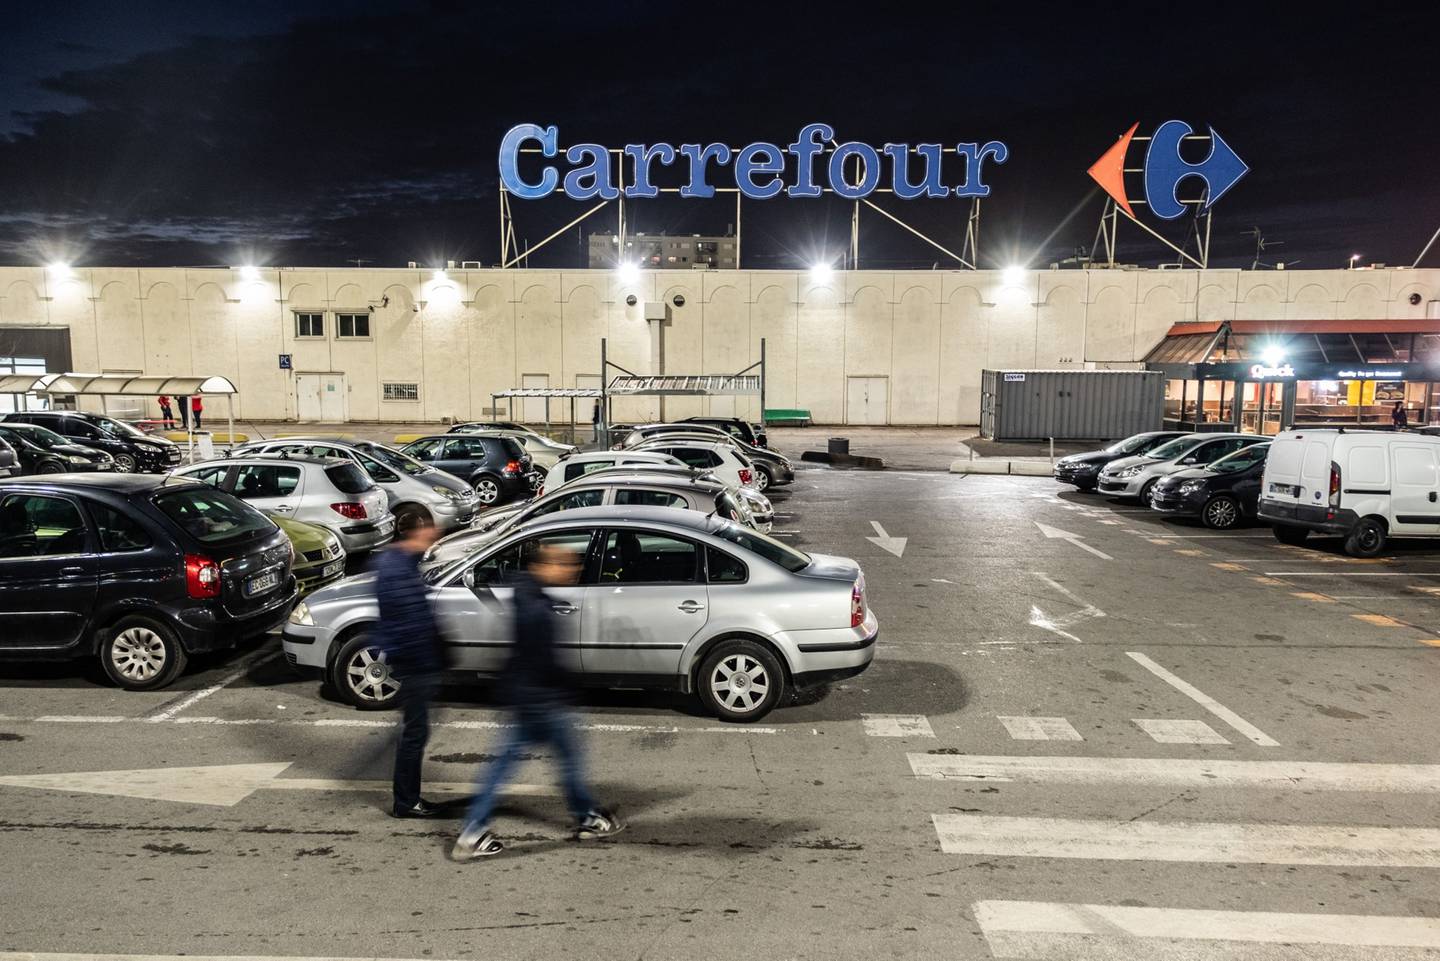 Los peatones caminan en el estacionamiento fuera de una tienda de hipermercado Carrefour SA en la noche en Marsella, Francia, el jueves 17 de enero de 2019. Las acciones de los minoristas franceses, incluyendo Carrefour, Fnac Darty y Maisons du Monde, podrían moverse después de que Casino Guichard-Perrachon SA informara de un conjunto de ventas del cuarto trimestre que superó las estimaciones a pesar de las protestas de los Chalecos Amarillos que amortiguaron los ingresos.